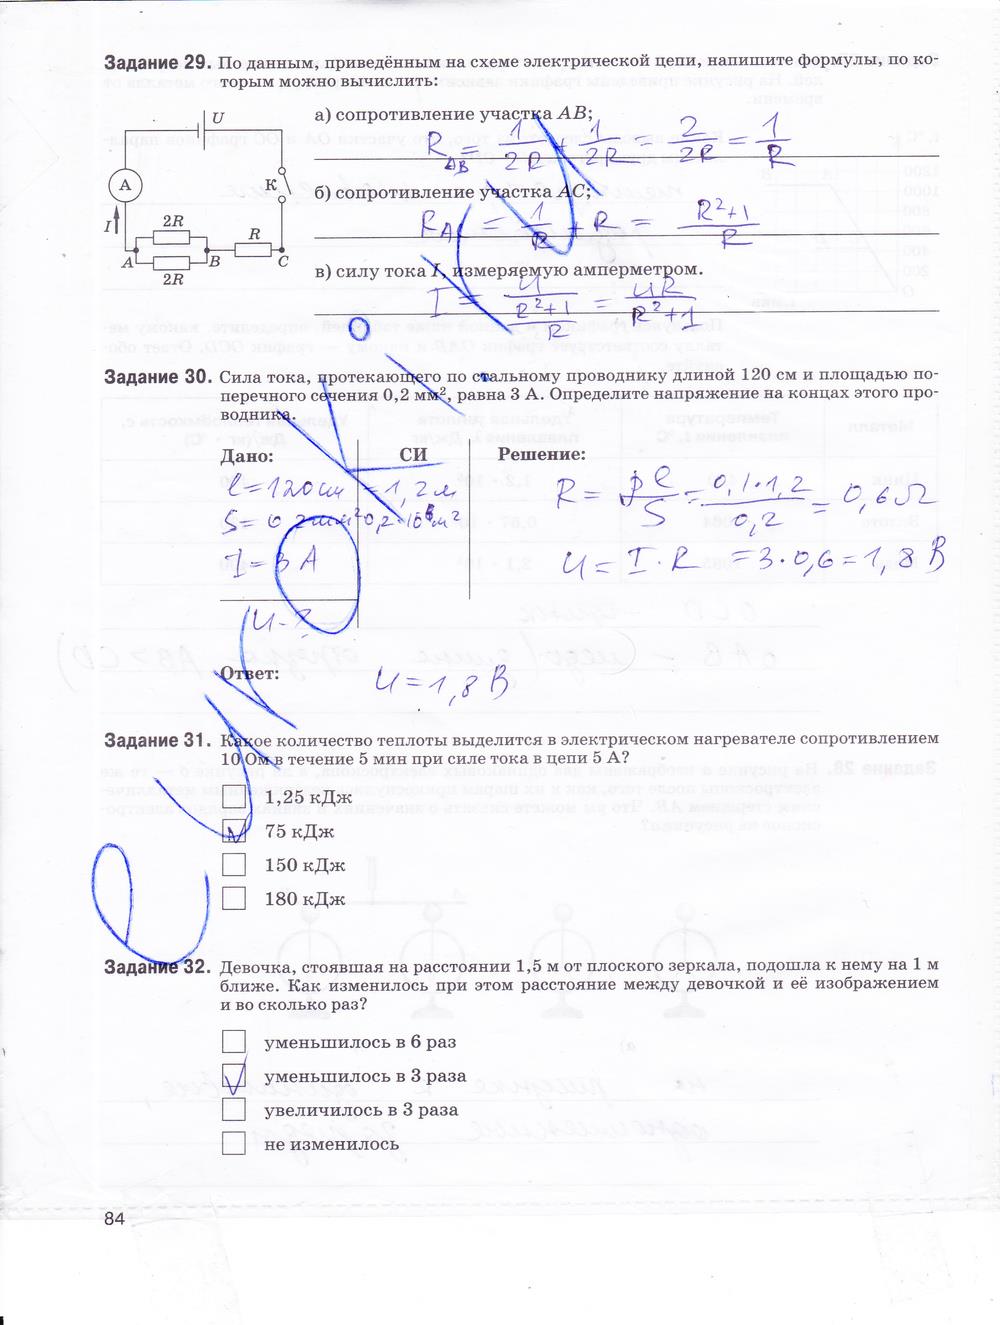 гдз 9 класс рабочая тетрадь страница 84 физика Гутник, Власова